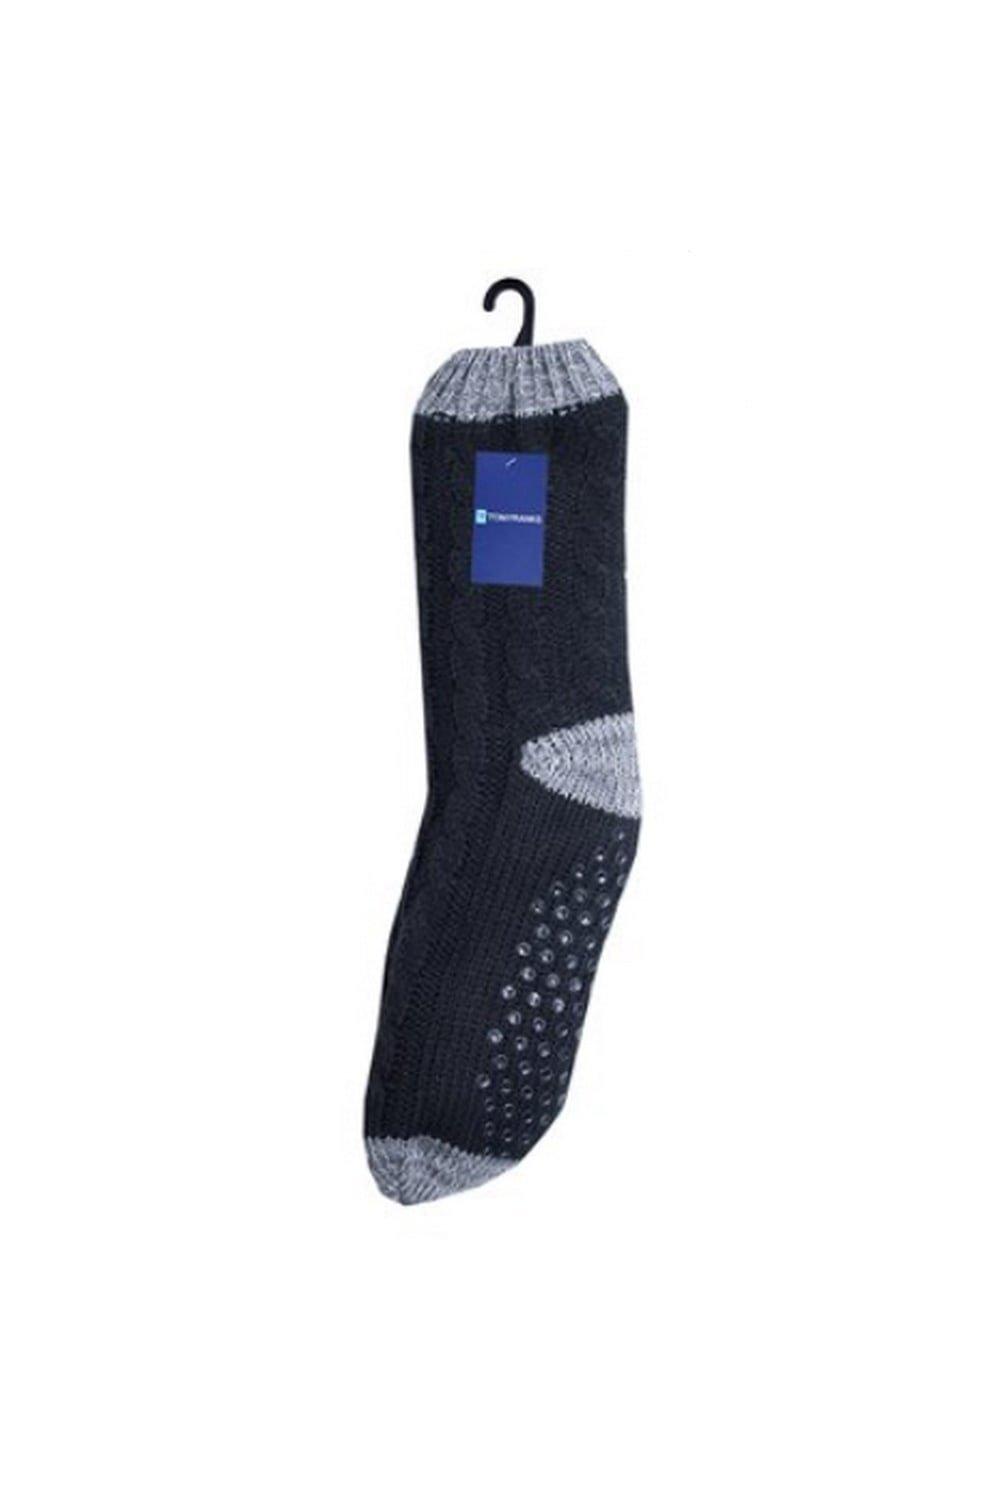 Contrast Slipper Socks